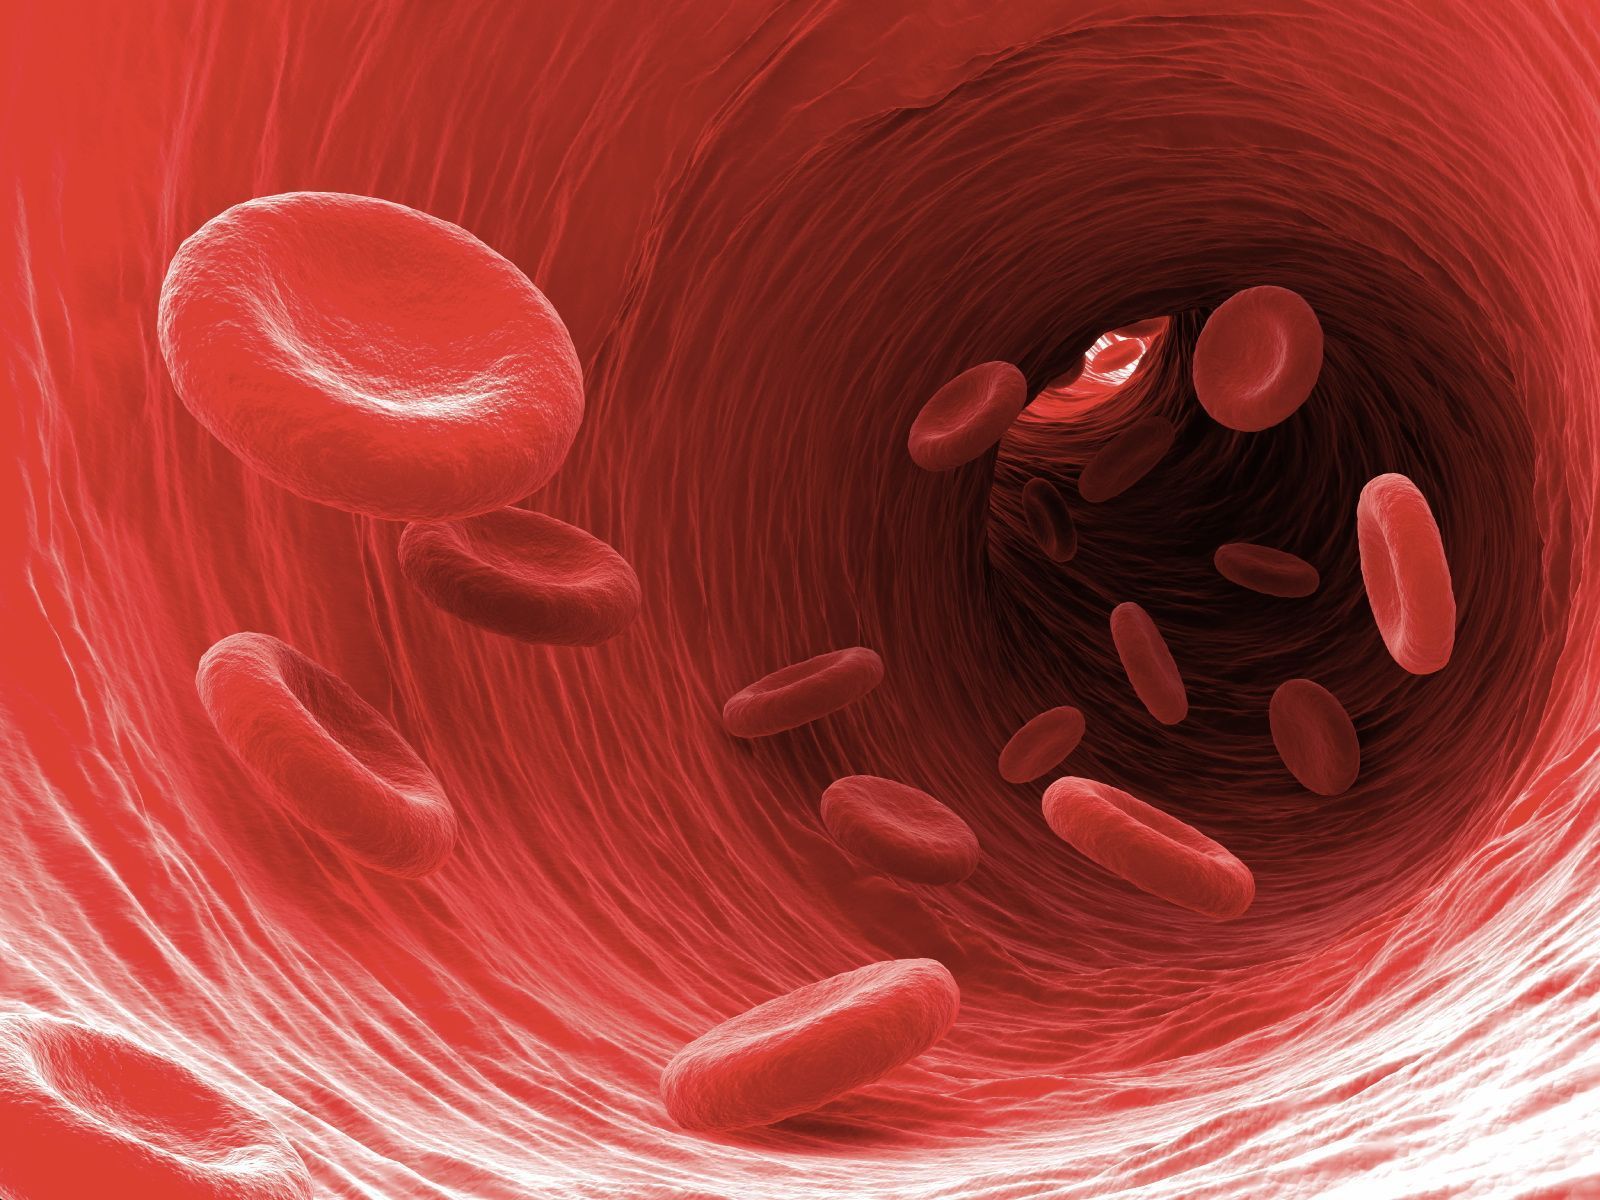 Huyết sắc tố là gì và chức năng của nó trong máu là gì?
